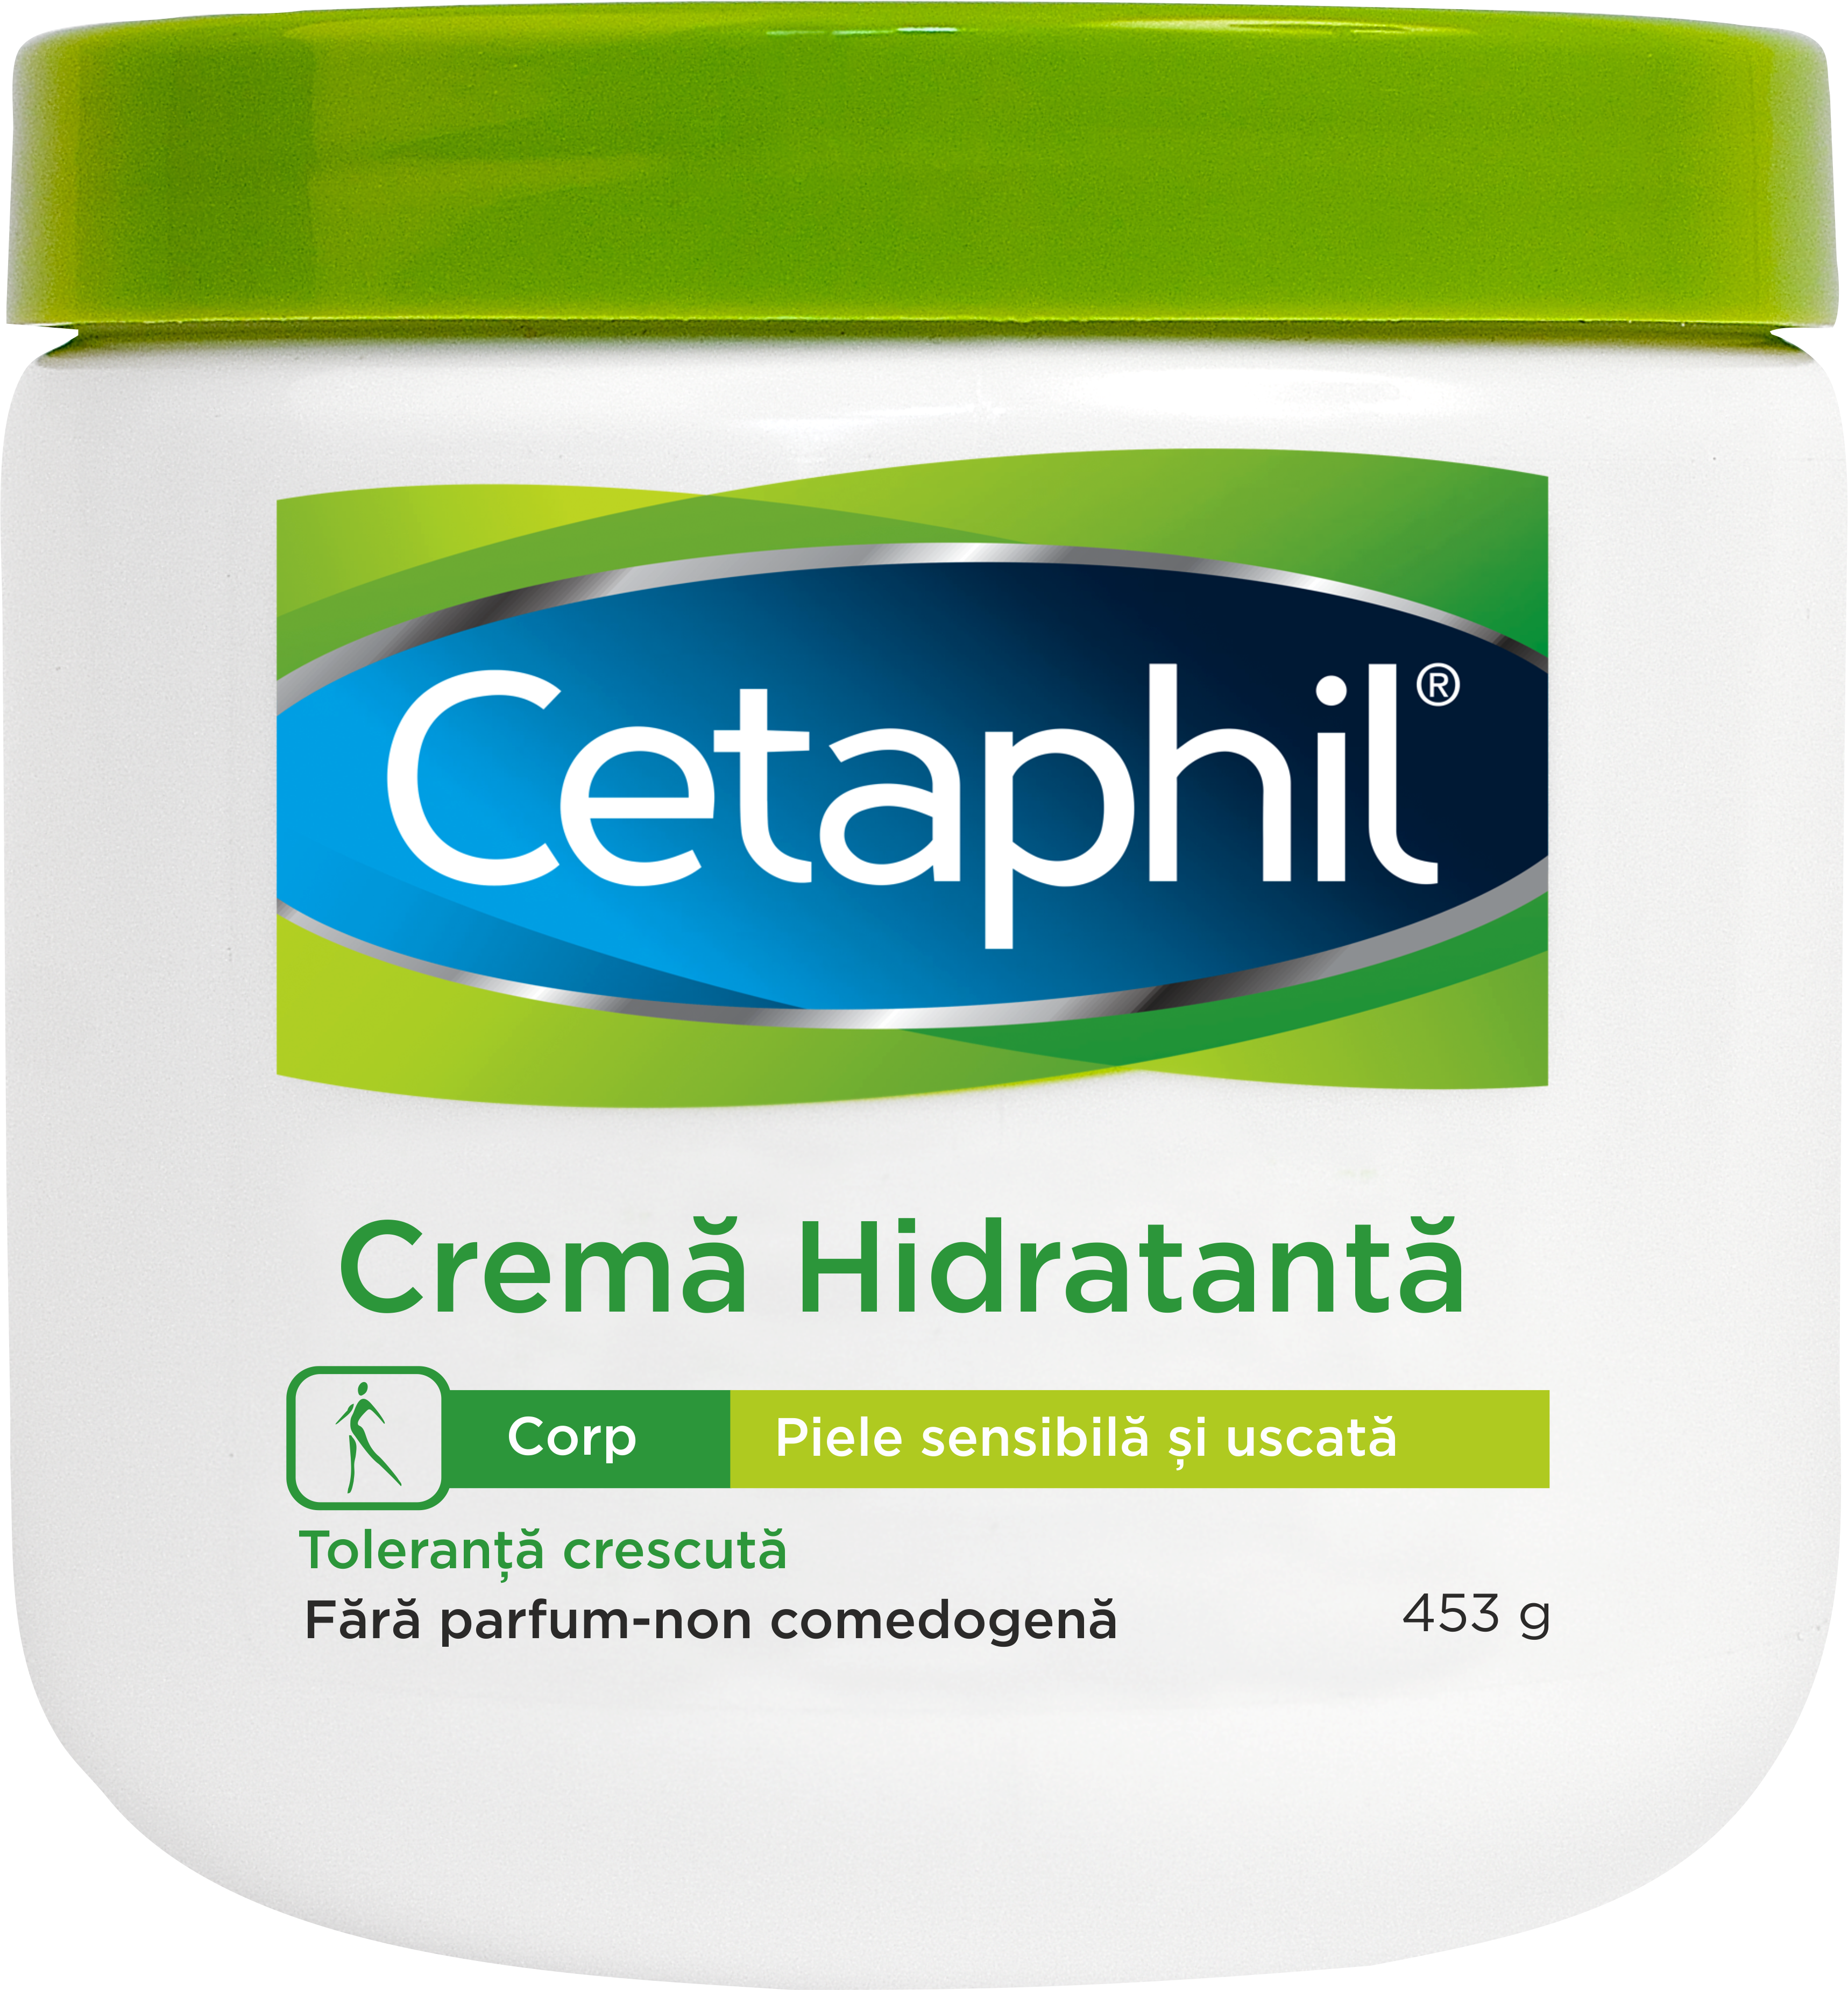 CETAPHIL CREMA HIDRATANTA 453G CETAPHIL